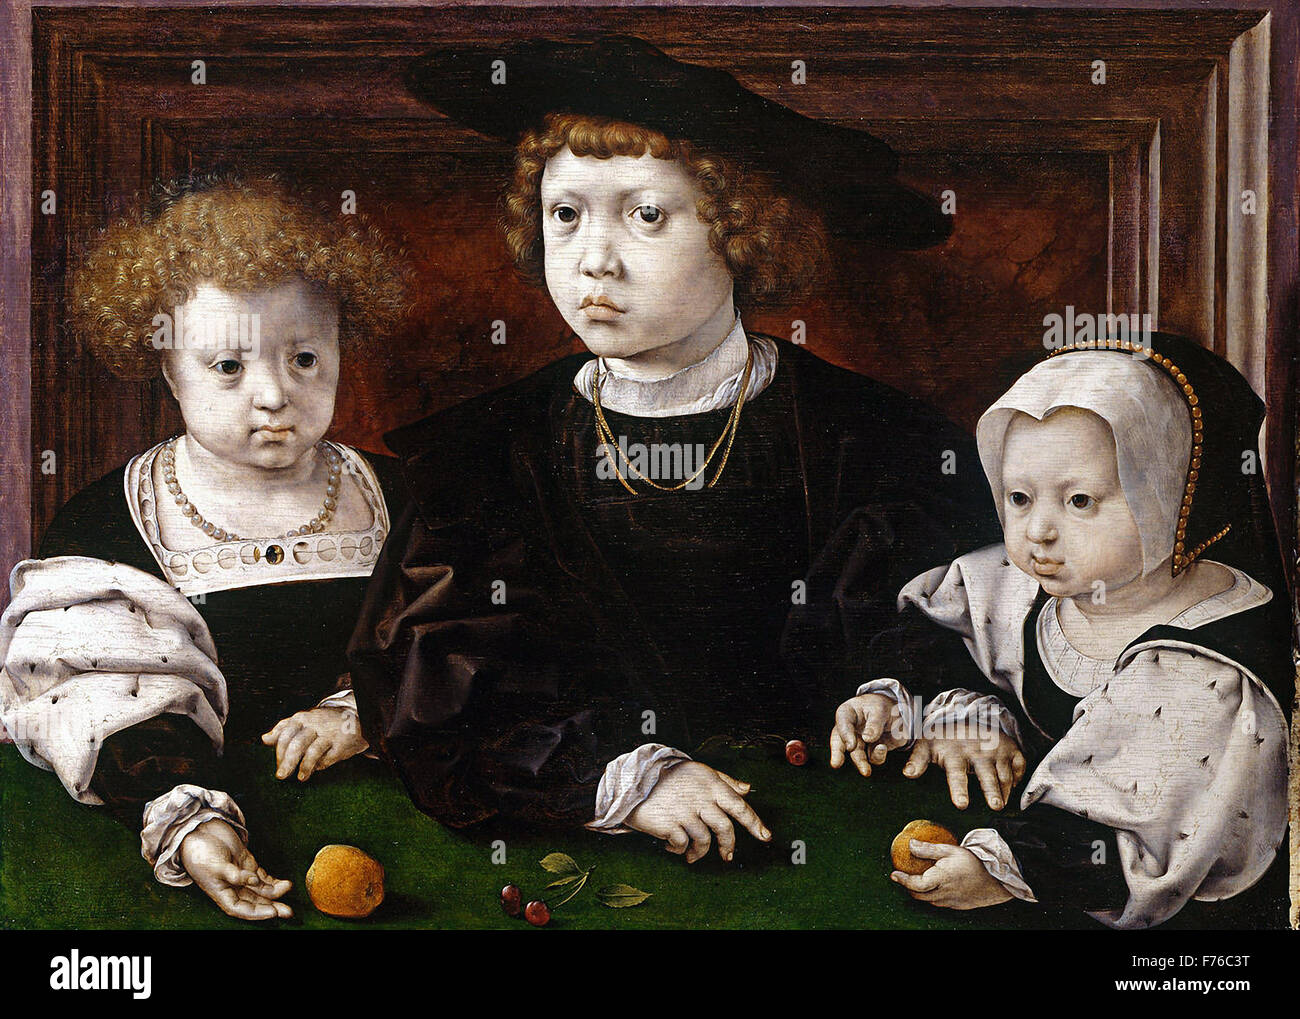 Jan Gossaert - die Kinder von Christian II., König von Dänemark Stockfoto